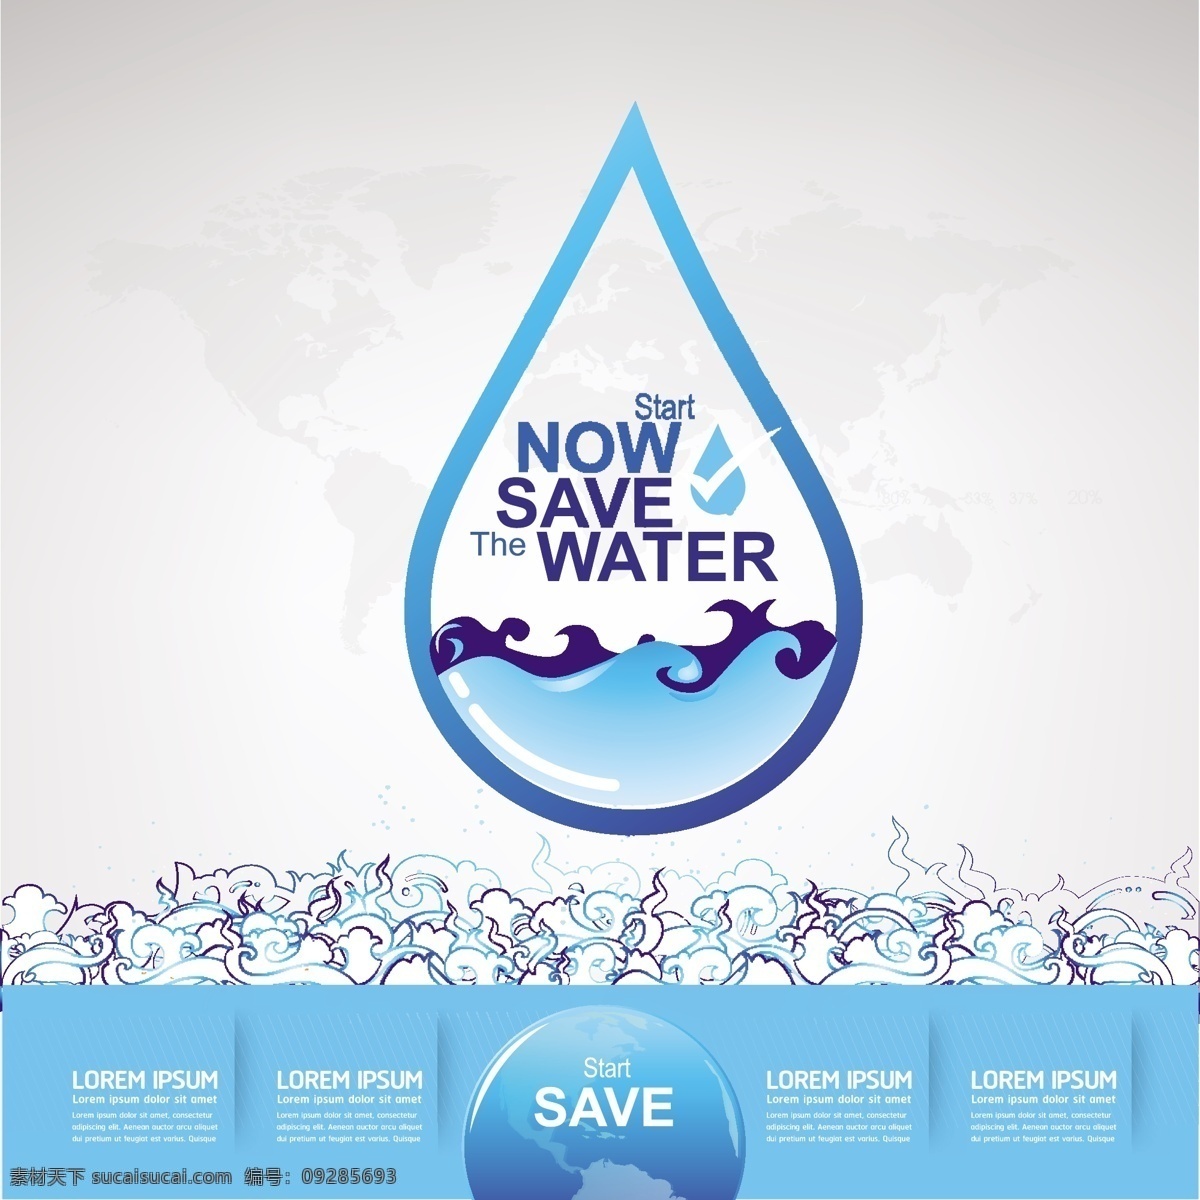 卡通 水滴 保护 水资源 环境 矢量 创意 蓝色 扁平化 矢量素材 公益海报 背景 平面素材